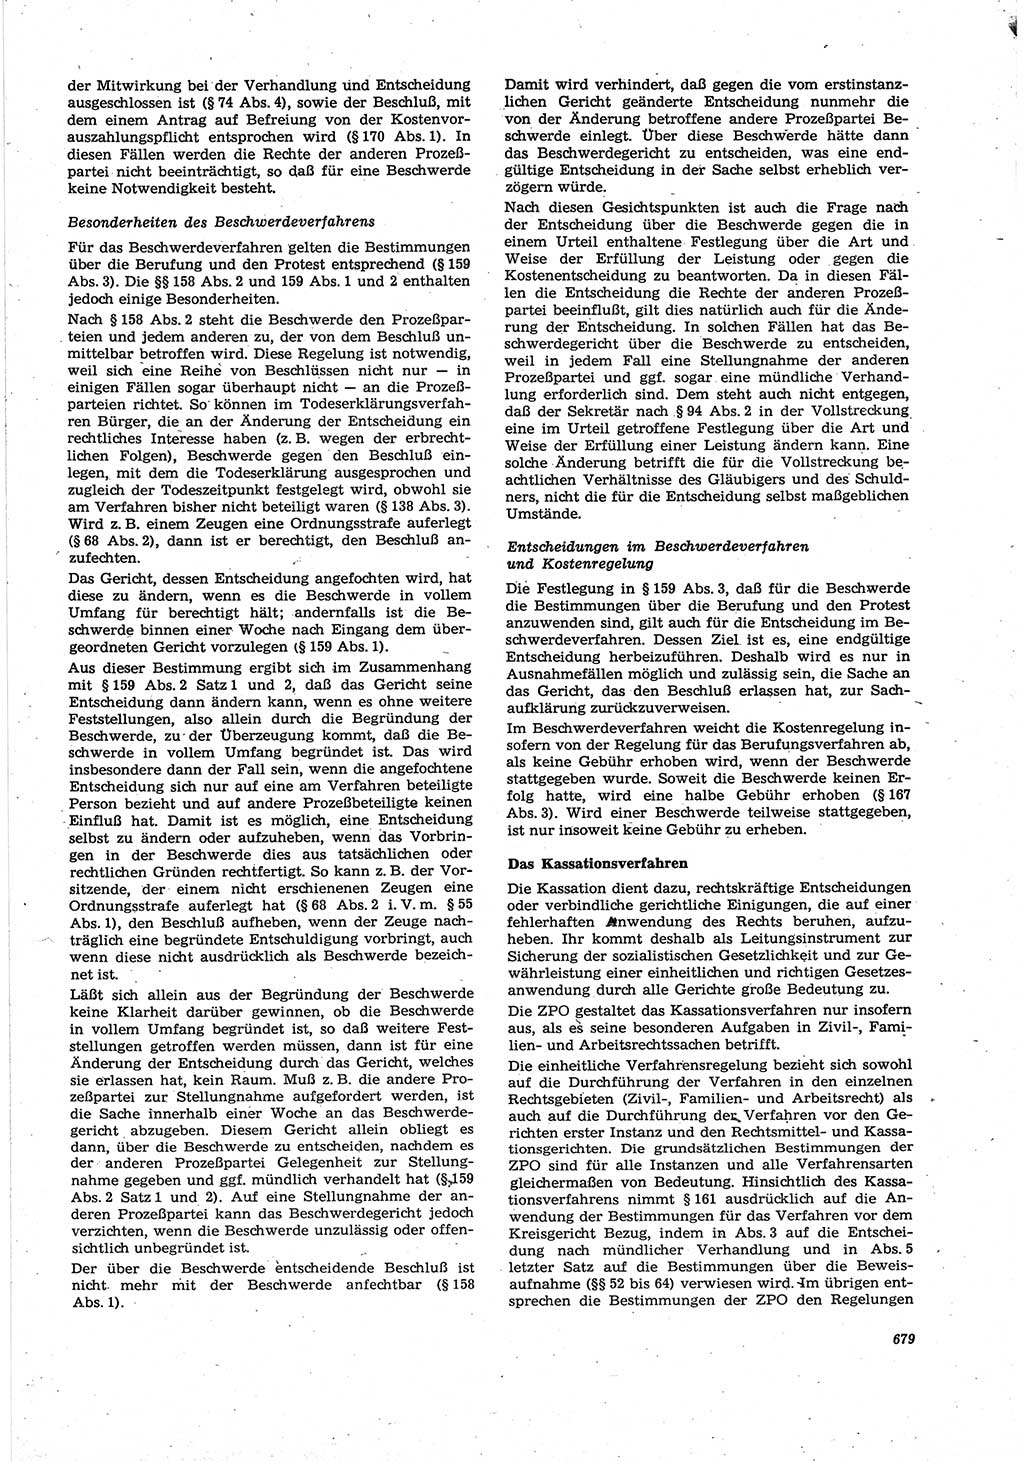 Neue Justiz (NJ), Zeitschrift für Recht und Rechtswissenschaft [Deutsche Demokratische Republik (DDR)], 30. Jahrgang 1976, Seite 679 (NJ DDR 1976, S. 679)